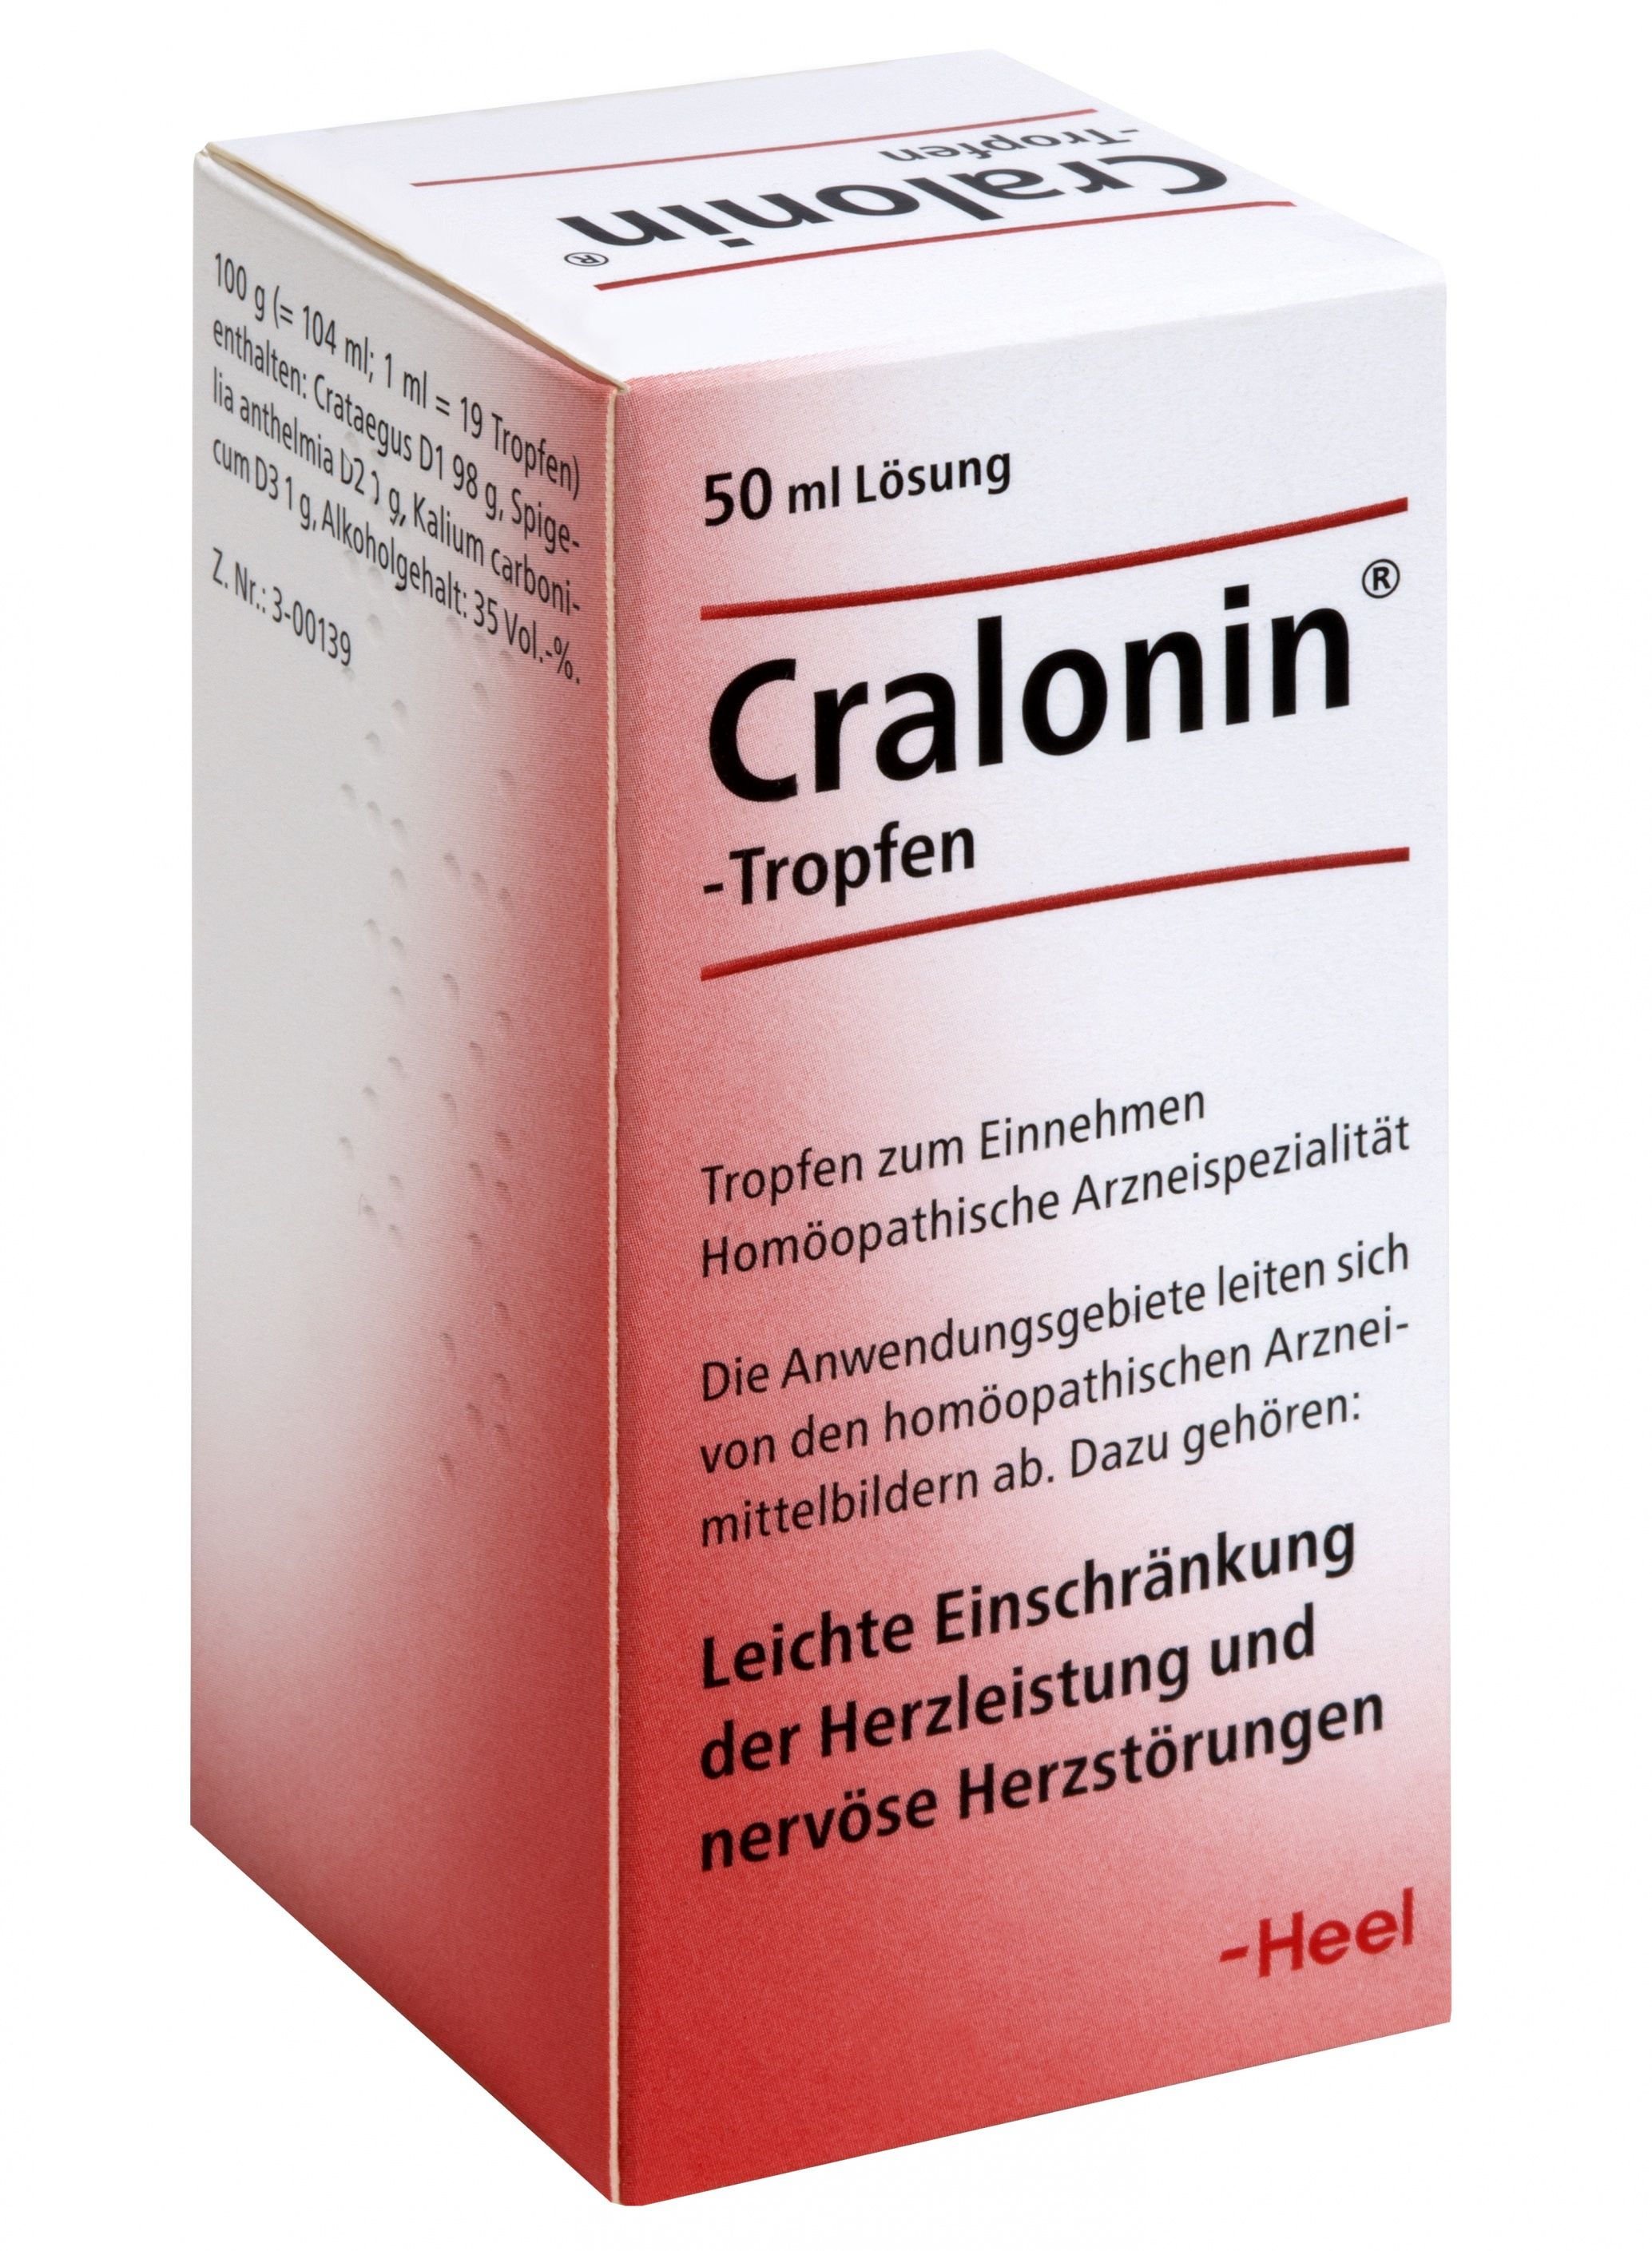 Abbildung Cralonin - Tropfen